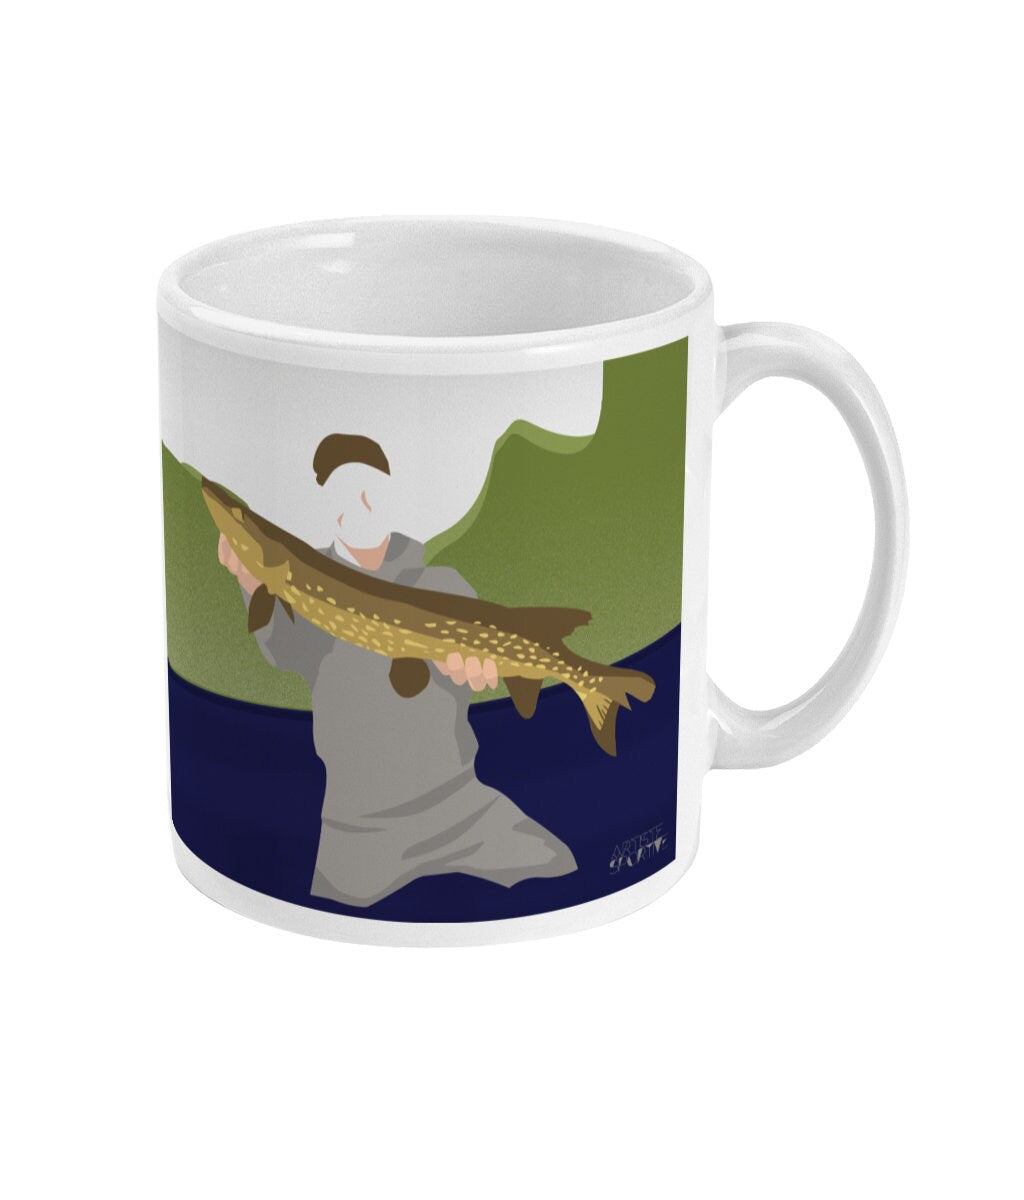 Tasse ou mug de pêche "Antoine le pêcheur" - Personnalisable